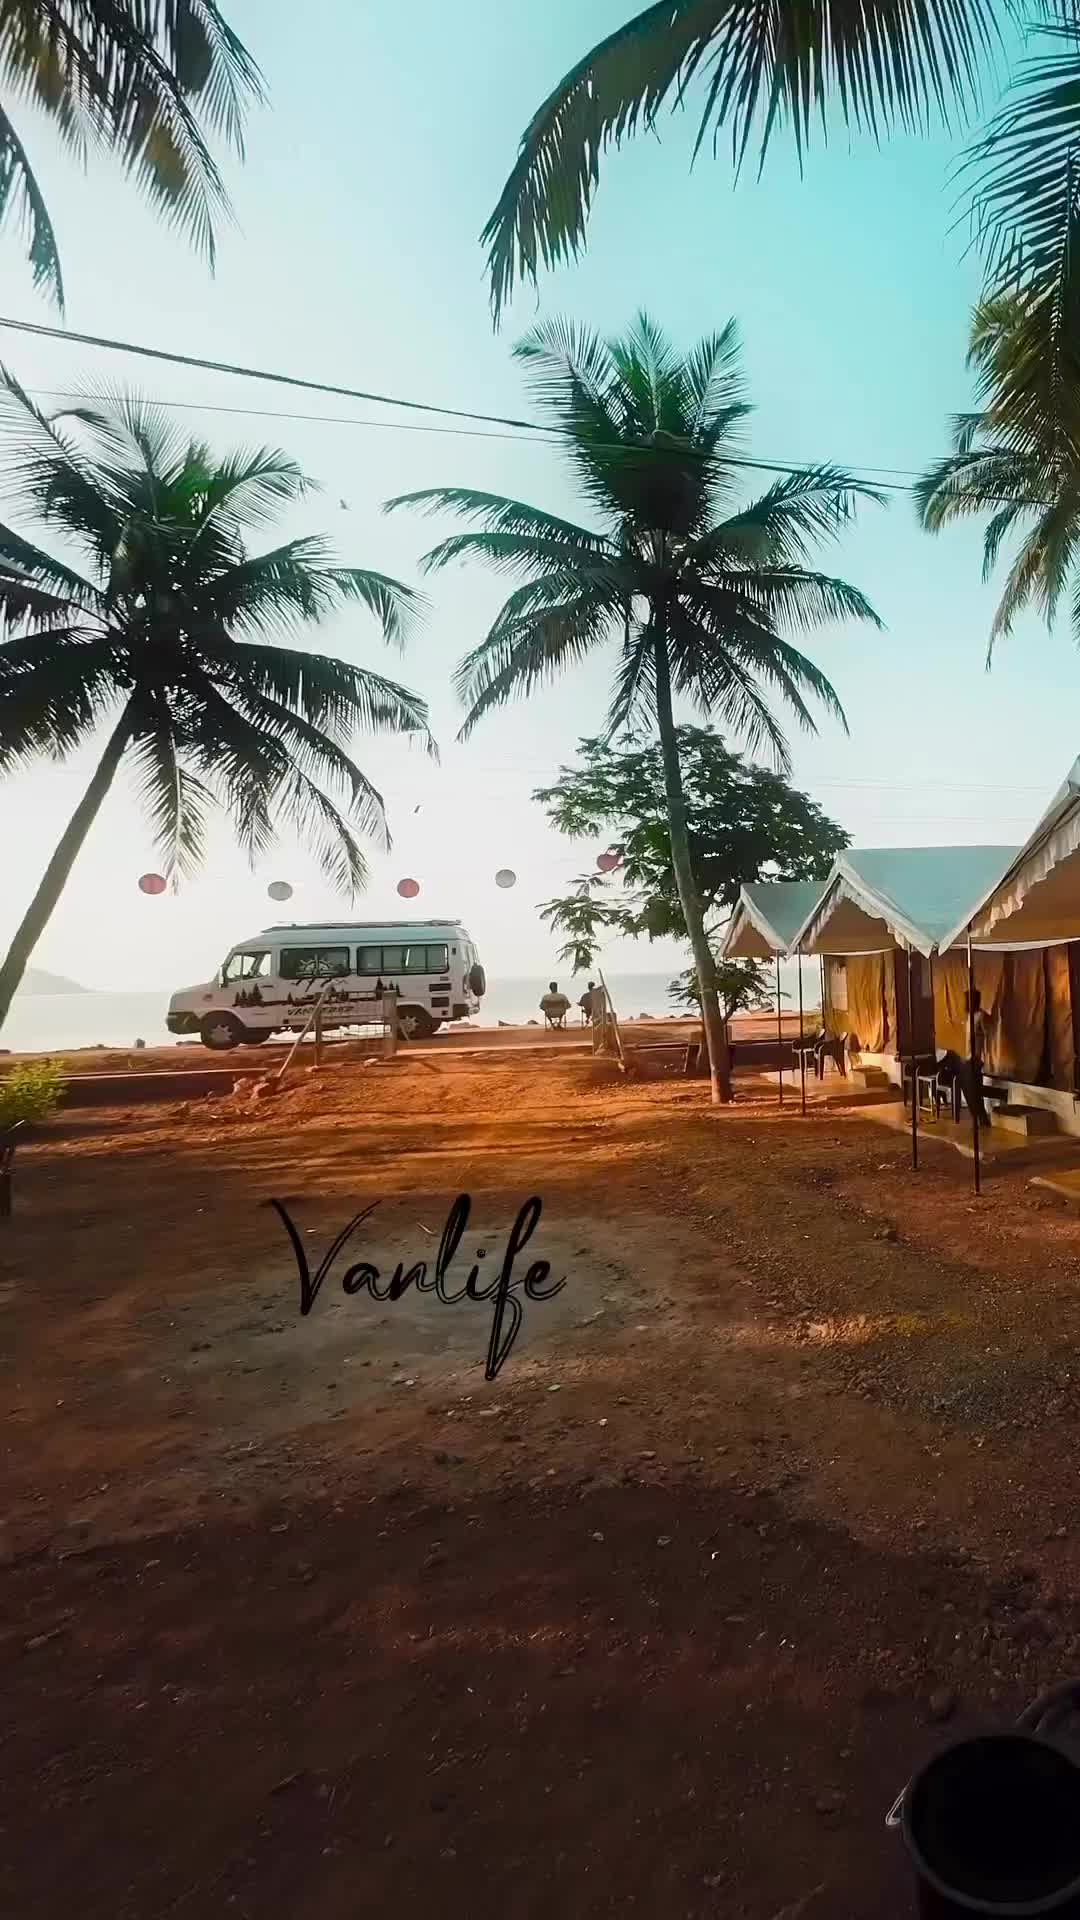 Vanlife at Gokarna Beach: A Tranquil Coastal Getaway